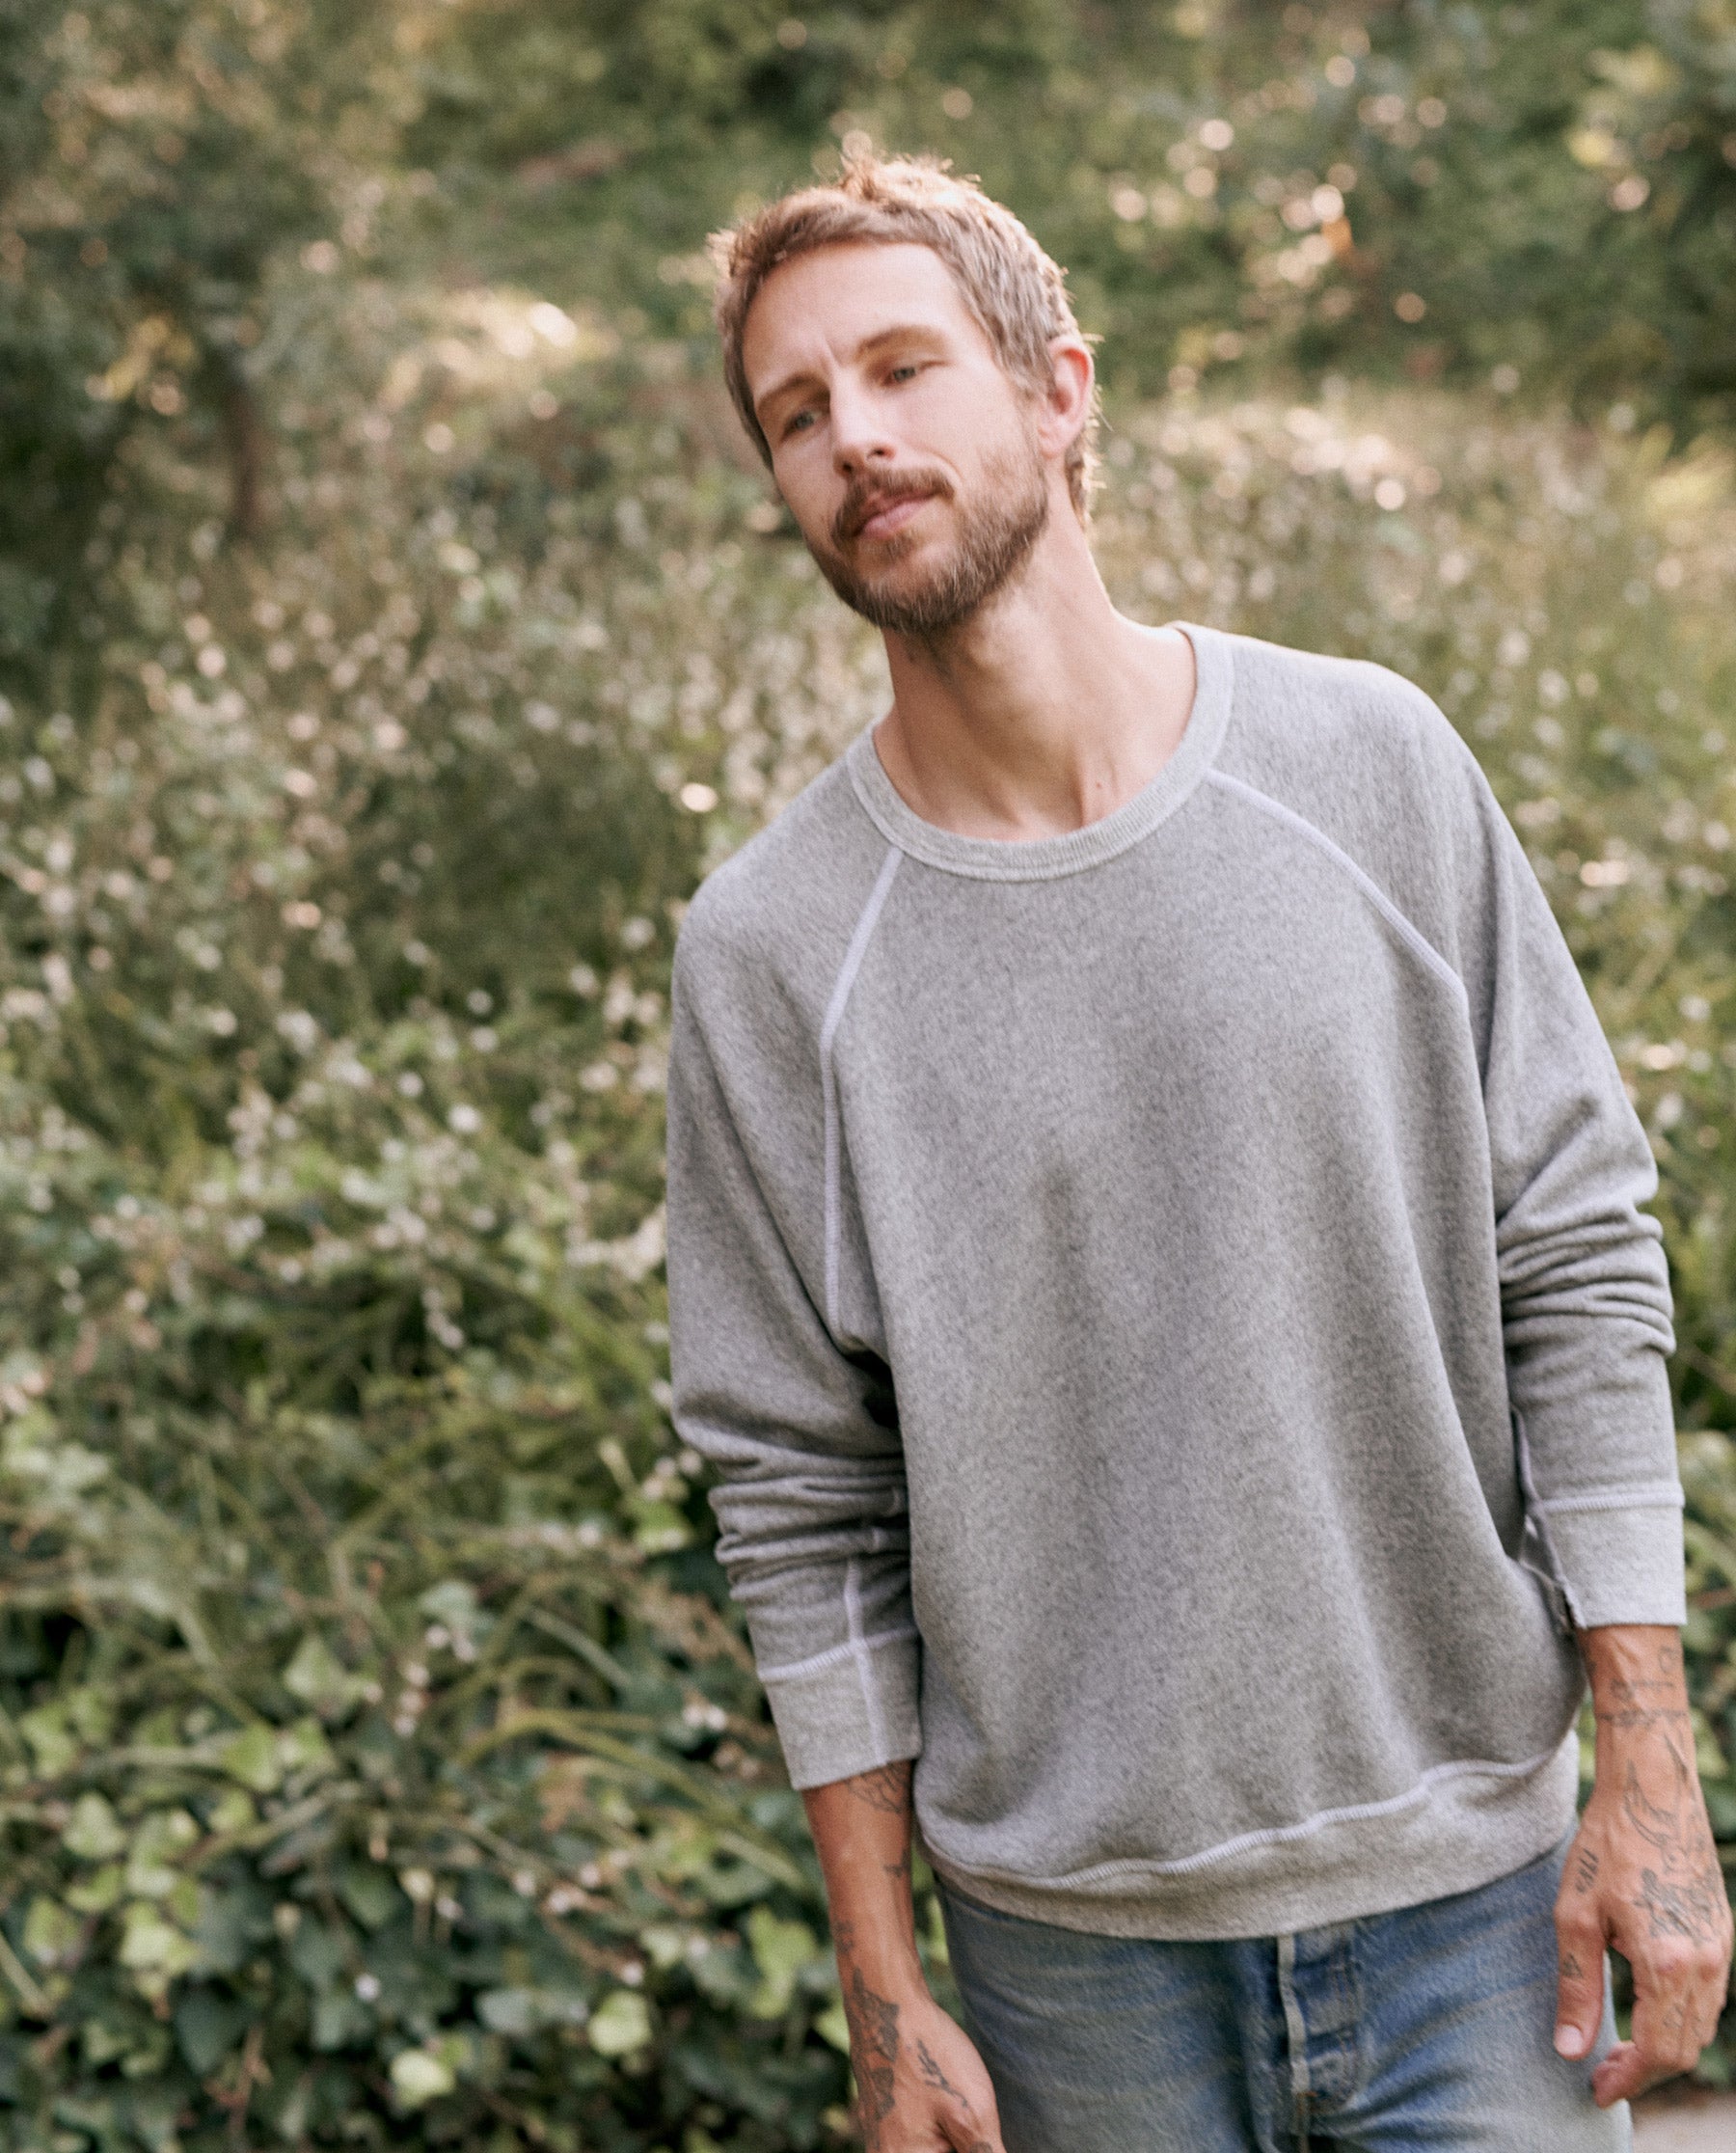 How To Wear Sweatshirt? - 8 Sweatshirt Outfit Ideas For Men